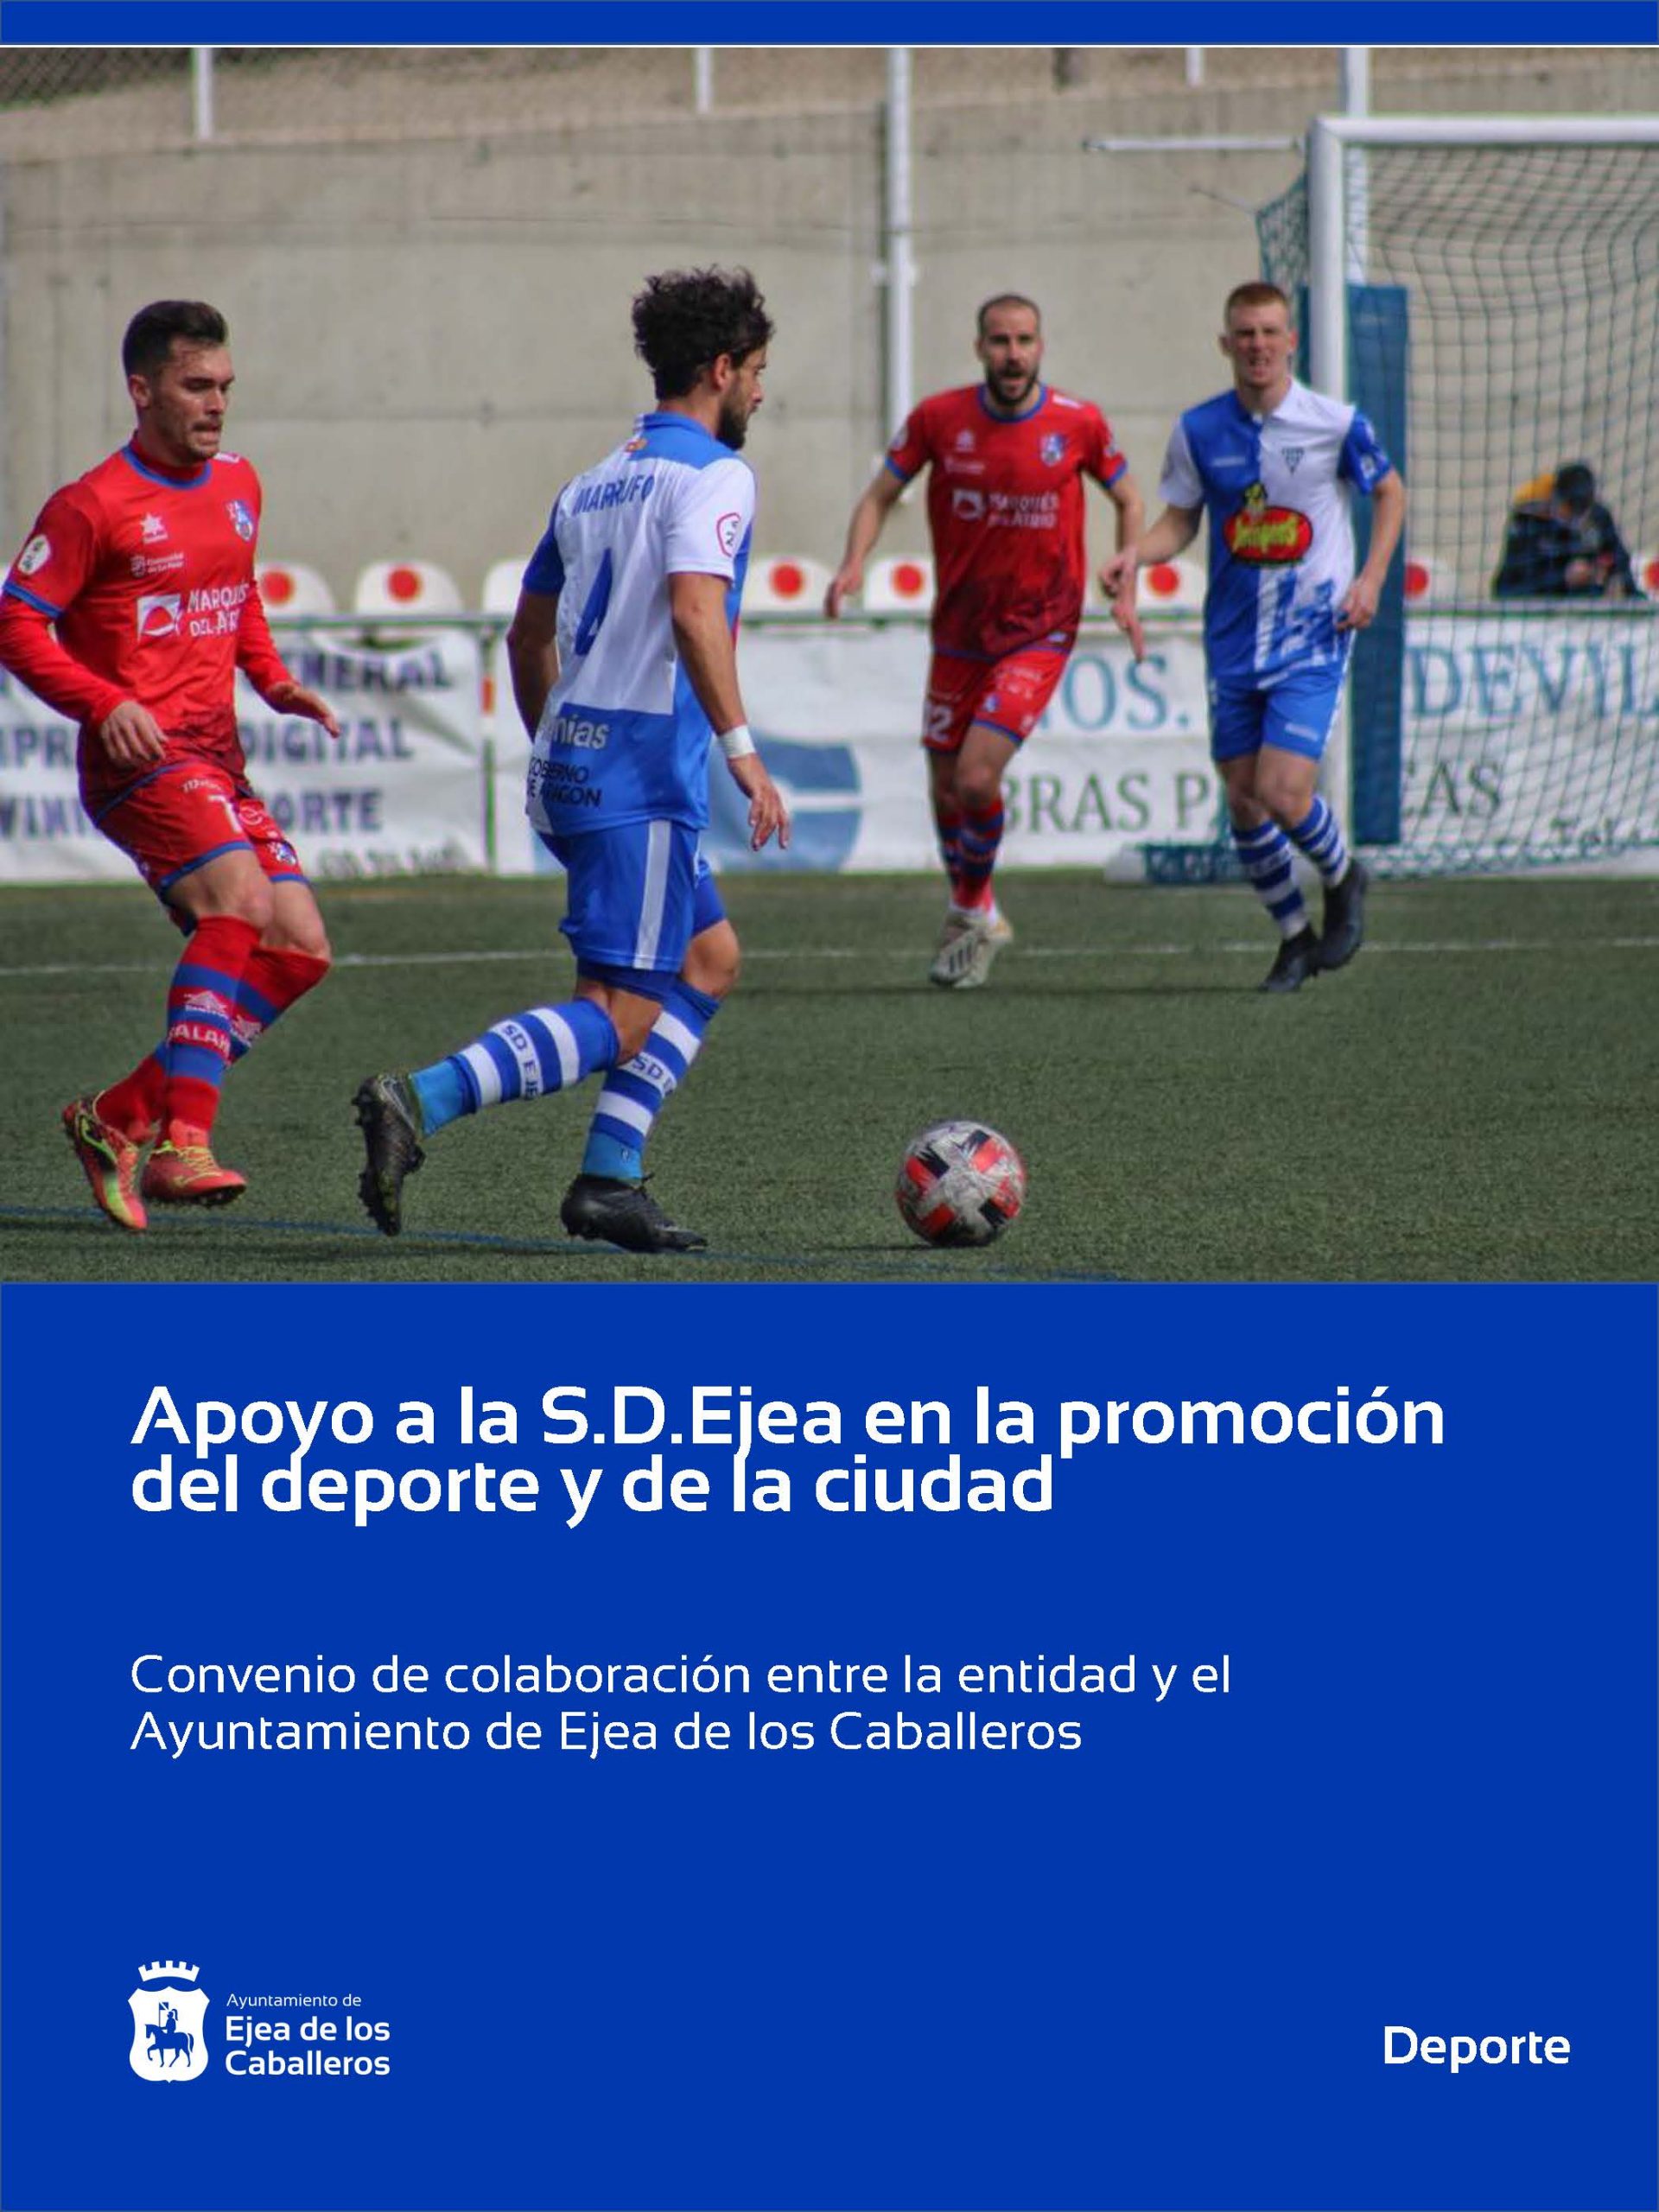 En este momento estás viendo El Ayuntamiento de Ejea apoya al Club de fútbol “S.D.Ejea” en la promoción y fomento del deporte y de la ciudad